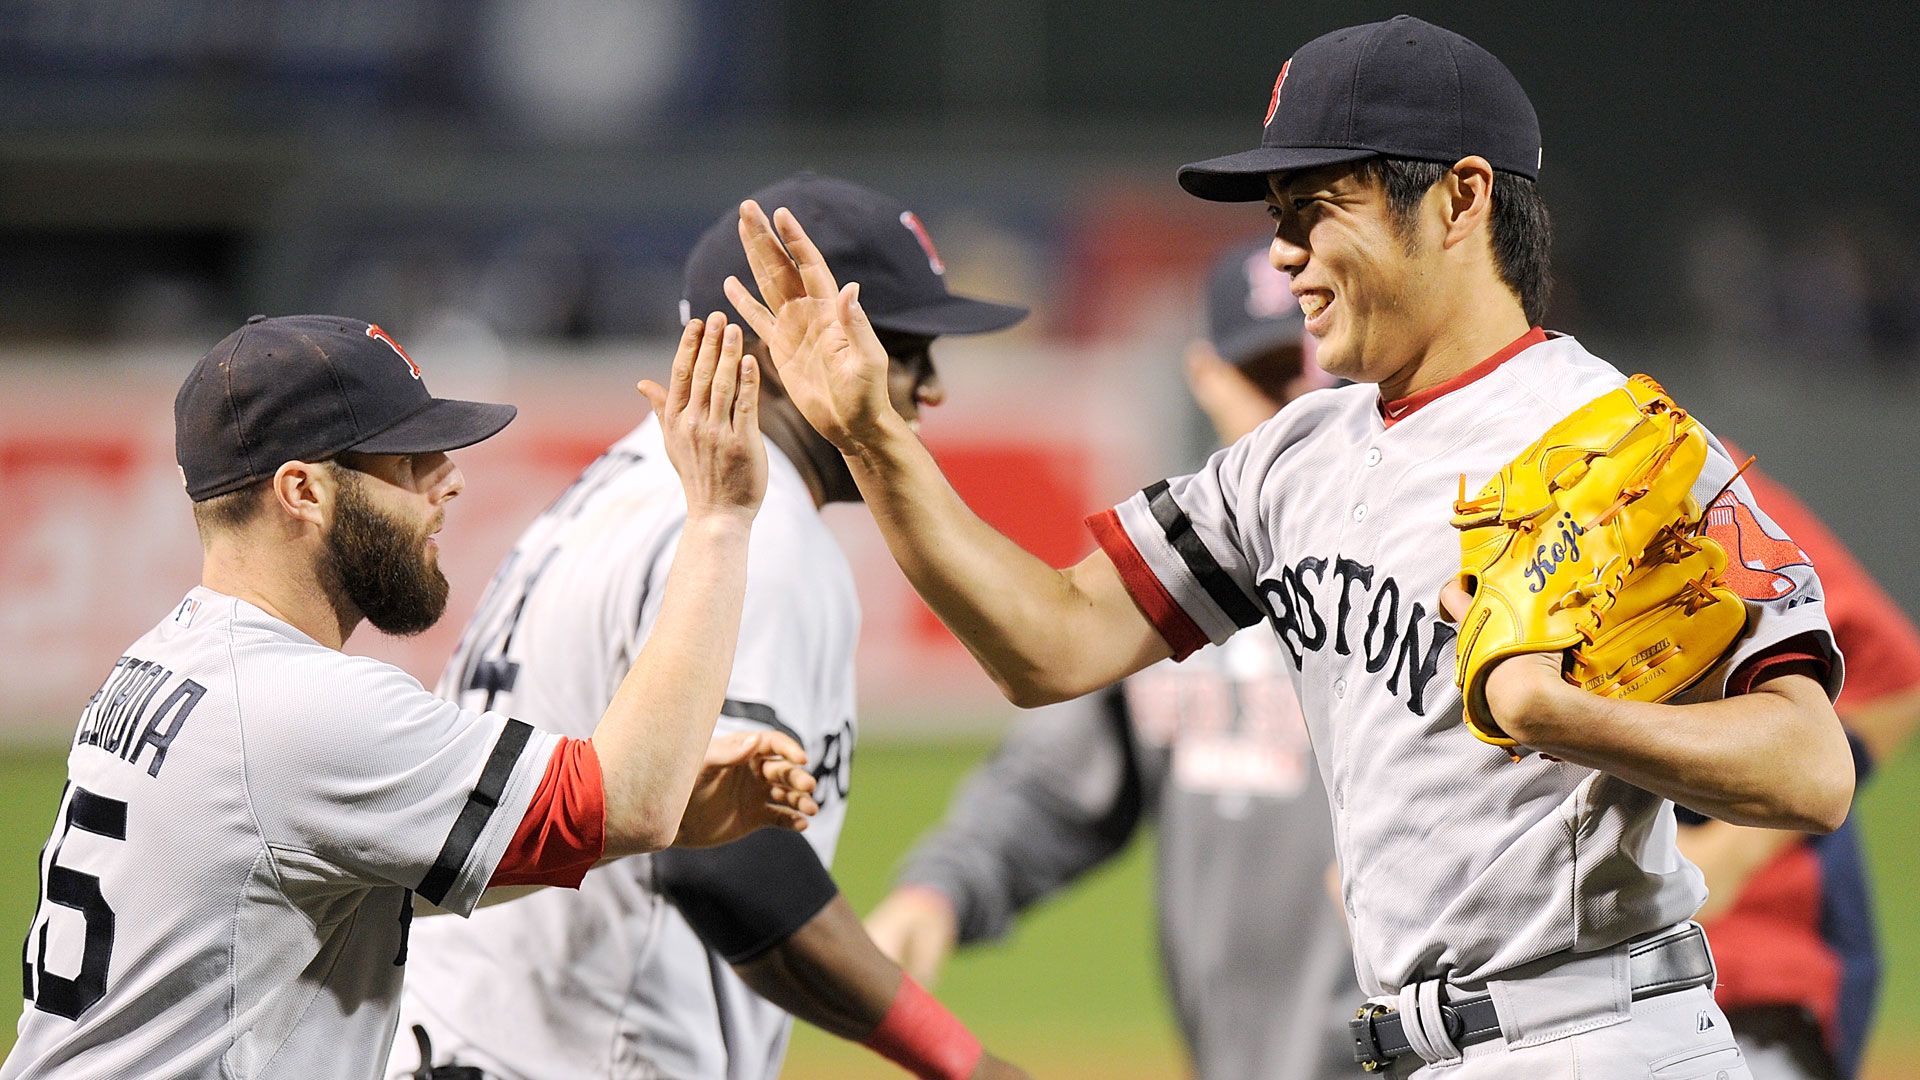 Daisuke Matsuzaka a success story from the start - The Boston Globe